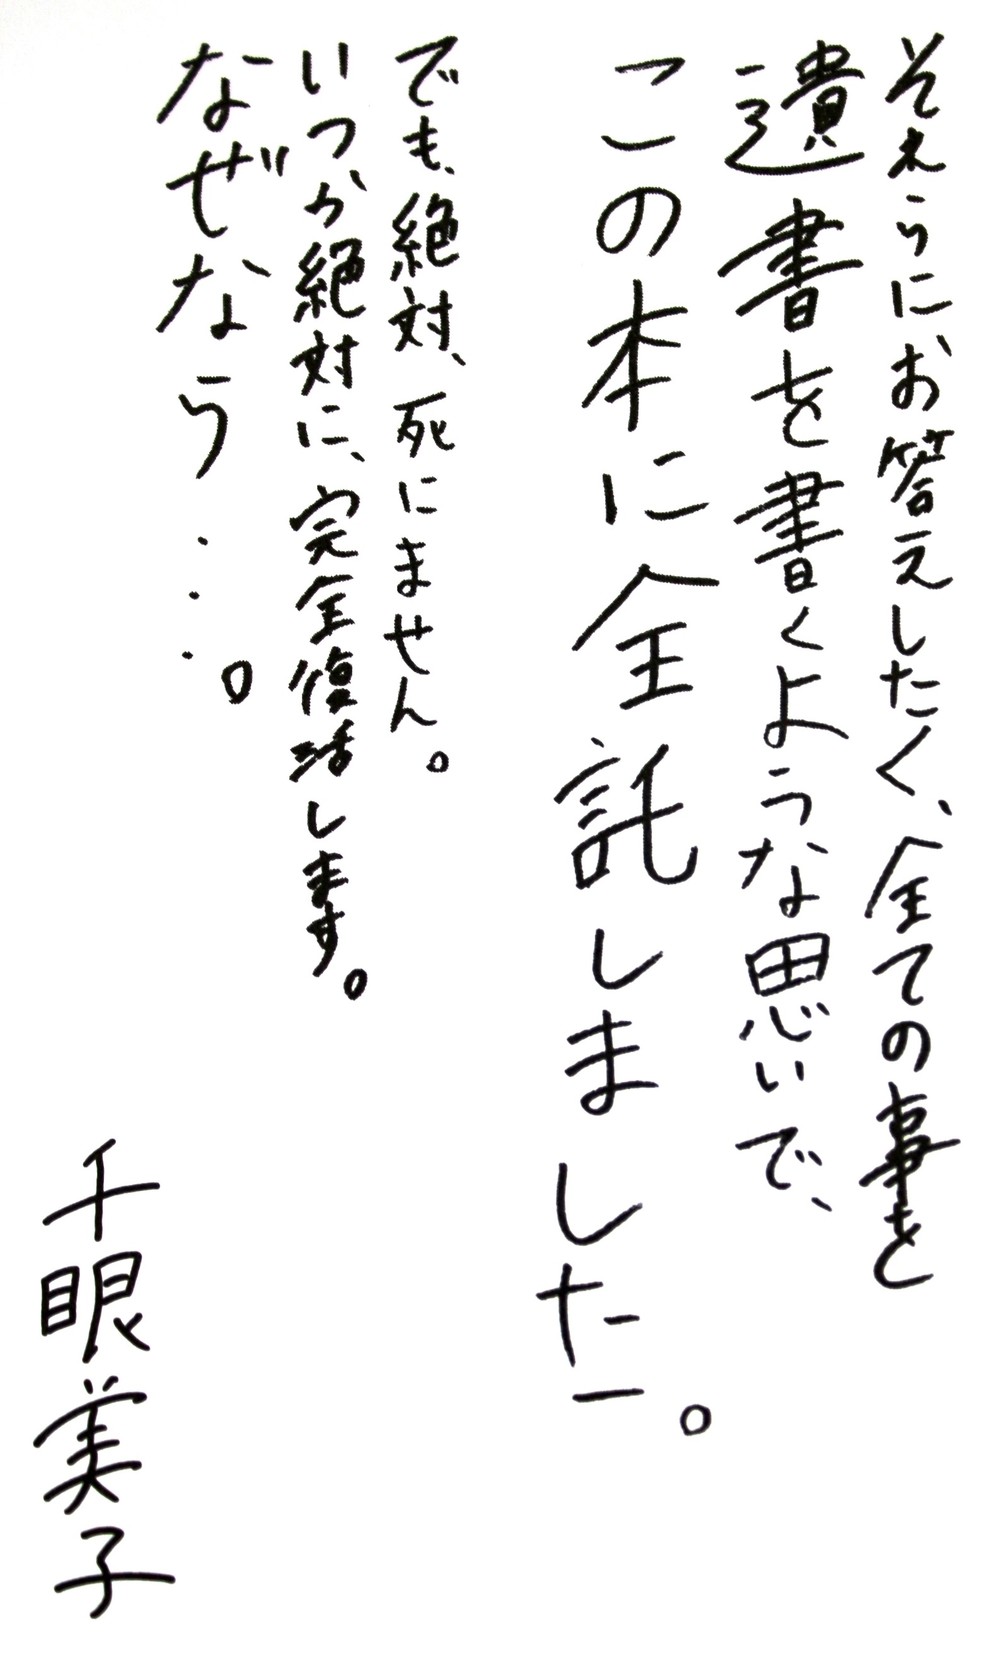 清水さん自筆の「まえがき」の一部